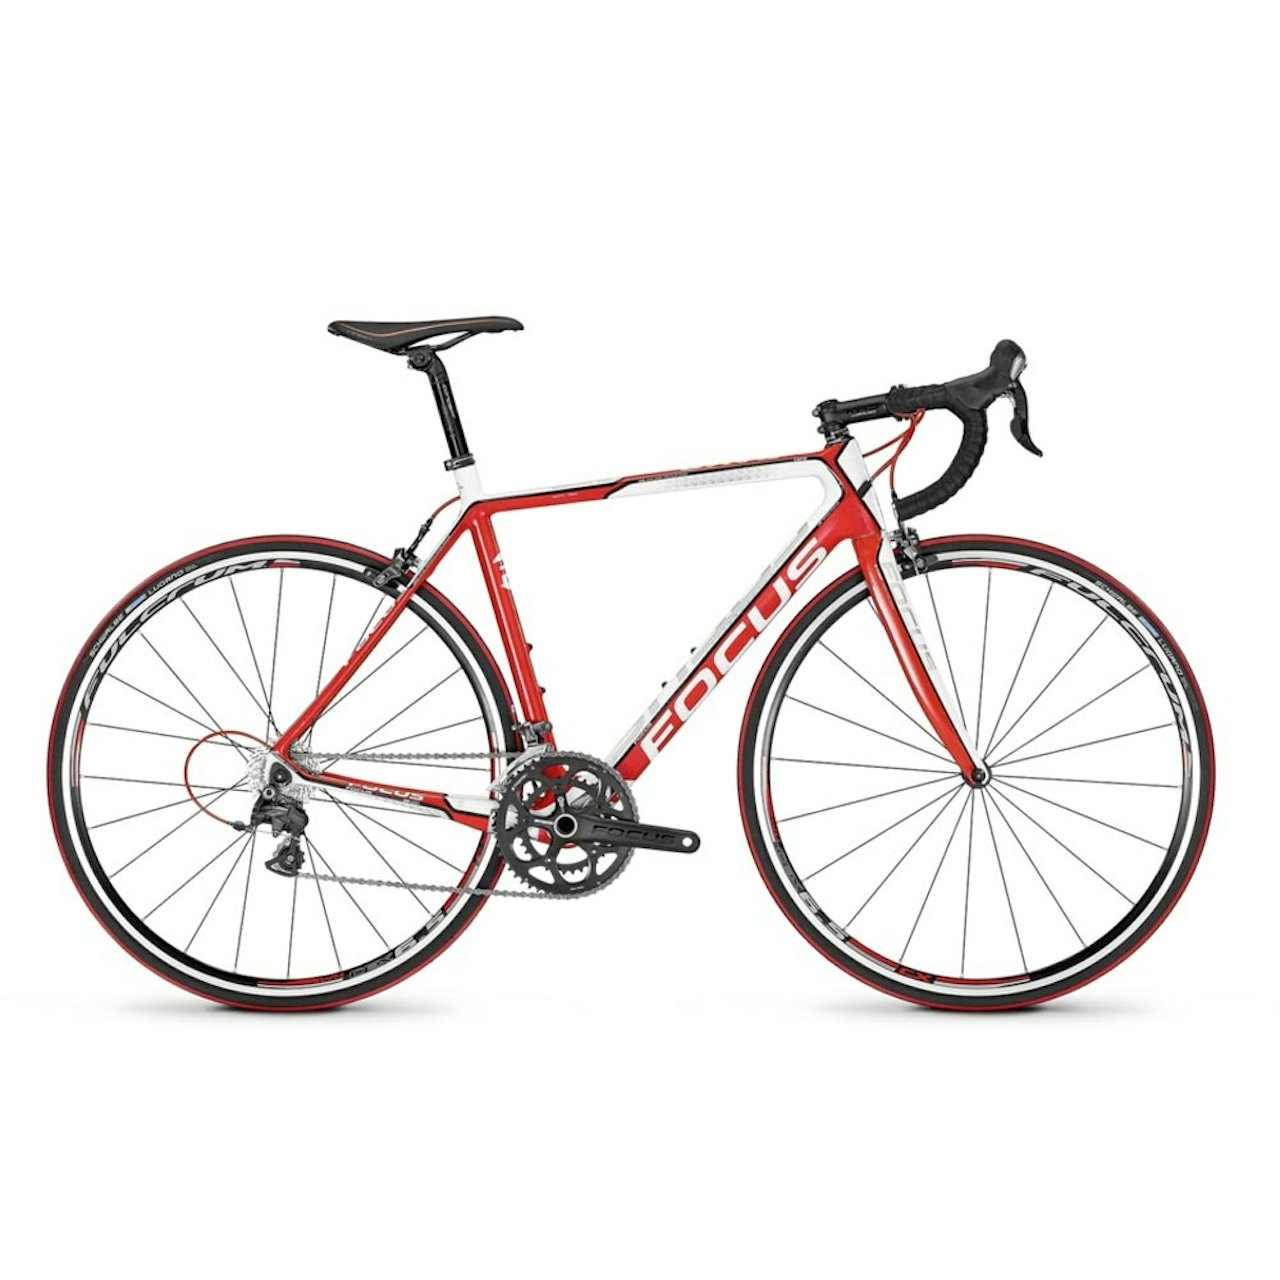 LEKKER: Førstepremie uke to er en sykkel fra Focus til en verdi av 17999 kroner.